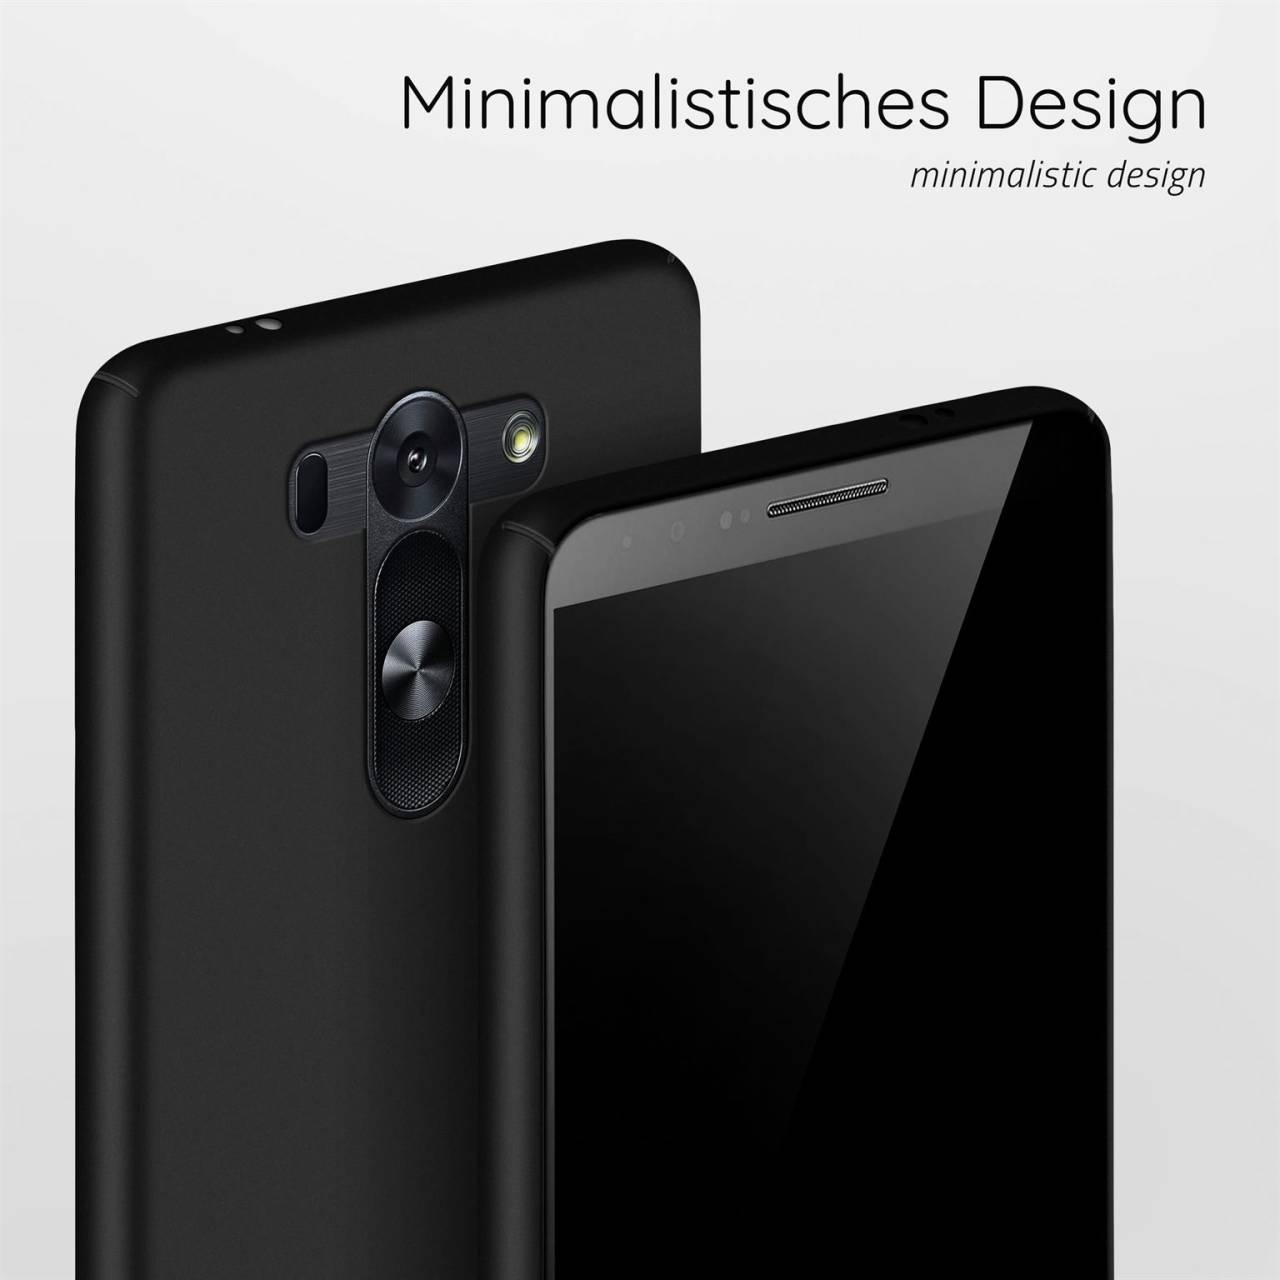 moex Alpha Case für LG G3 – Extrem dünne, minimalistische Hülle in seidenmatt